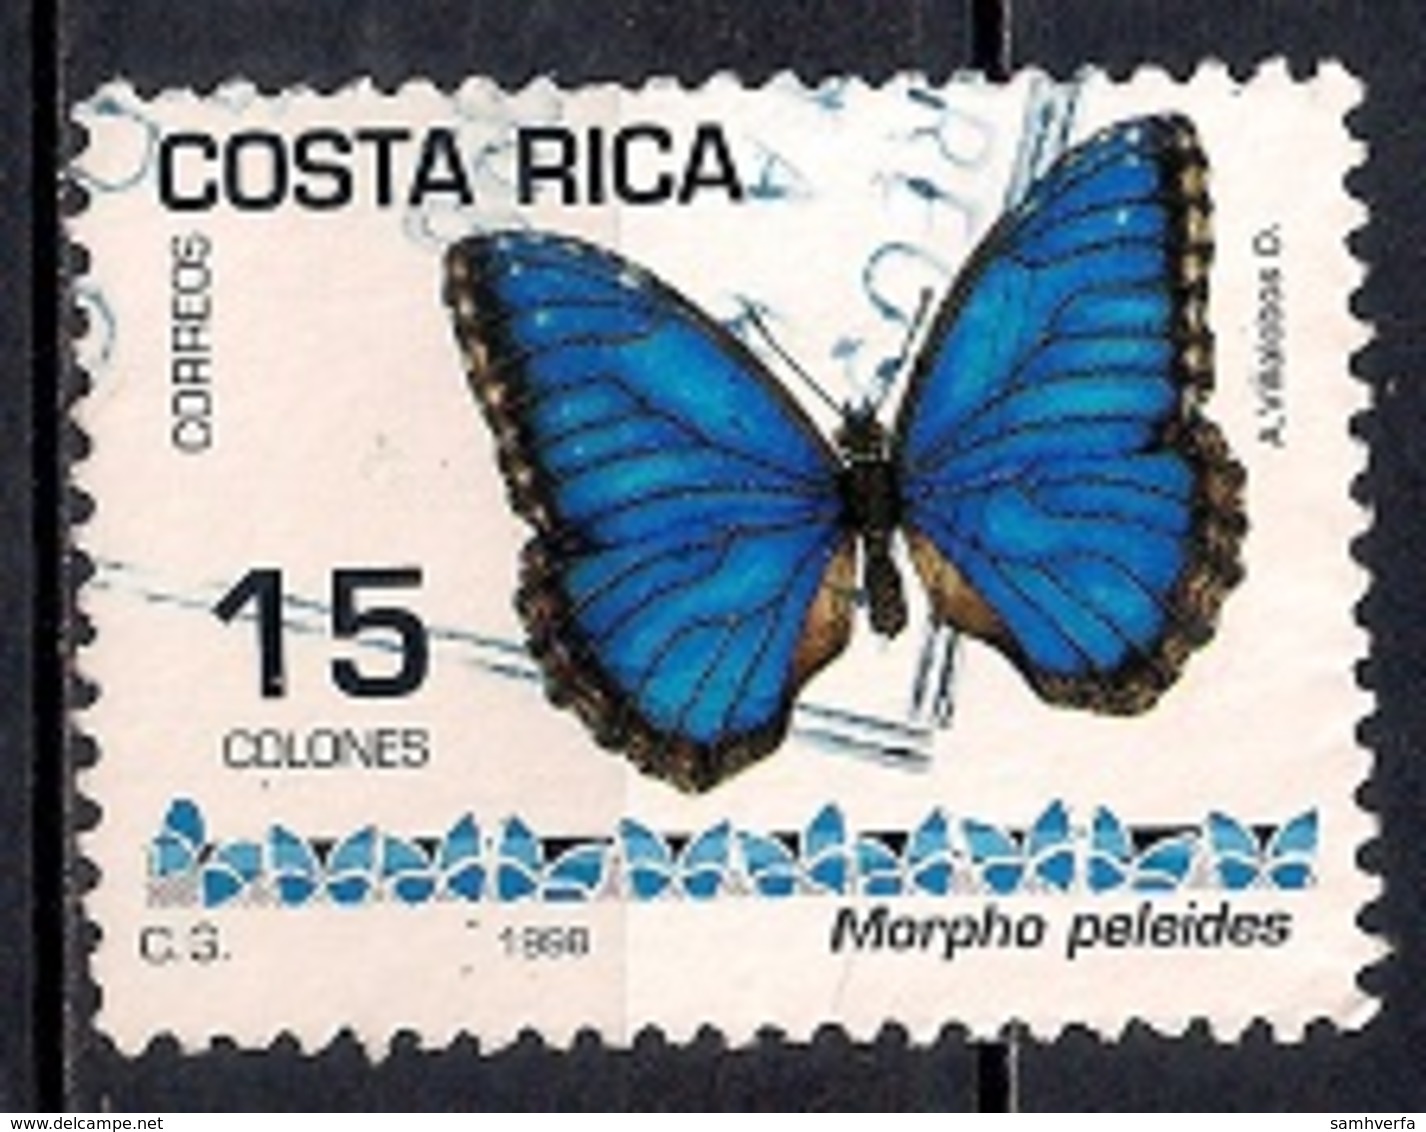 Costa Rica 1998 - Butterflies - Costa Rica